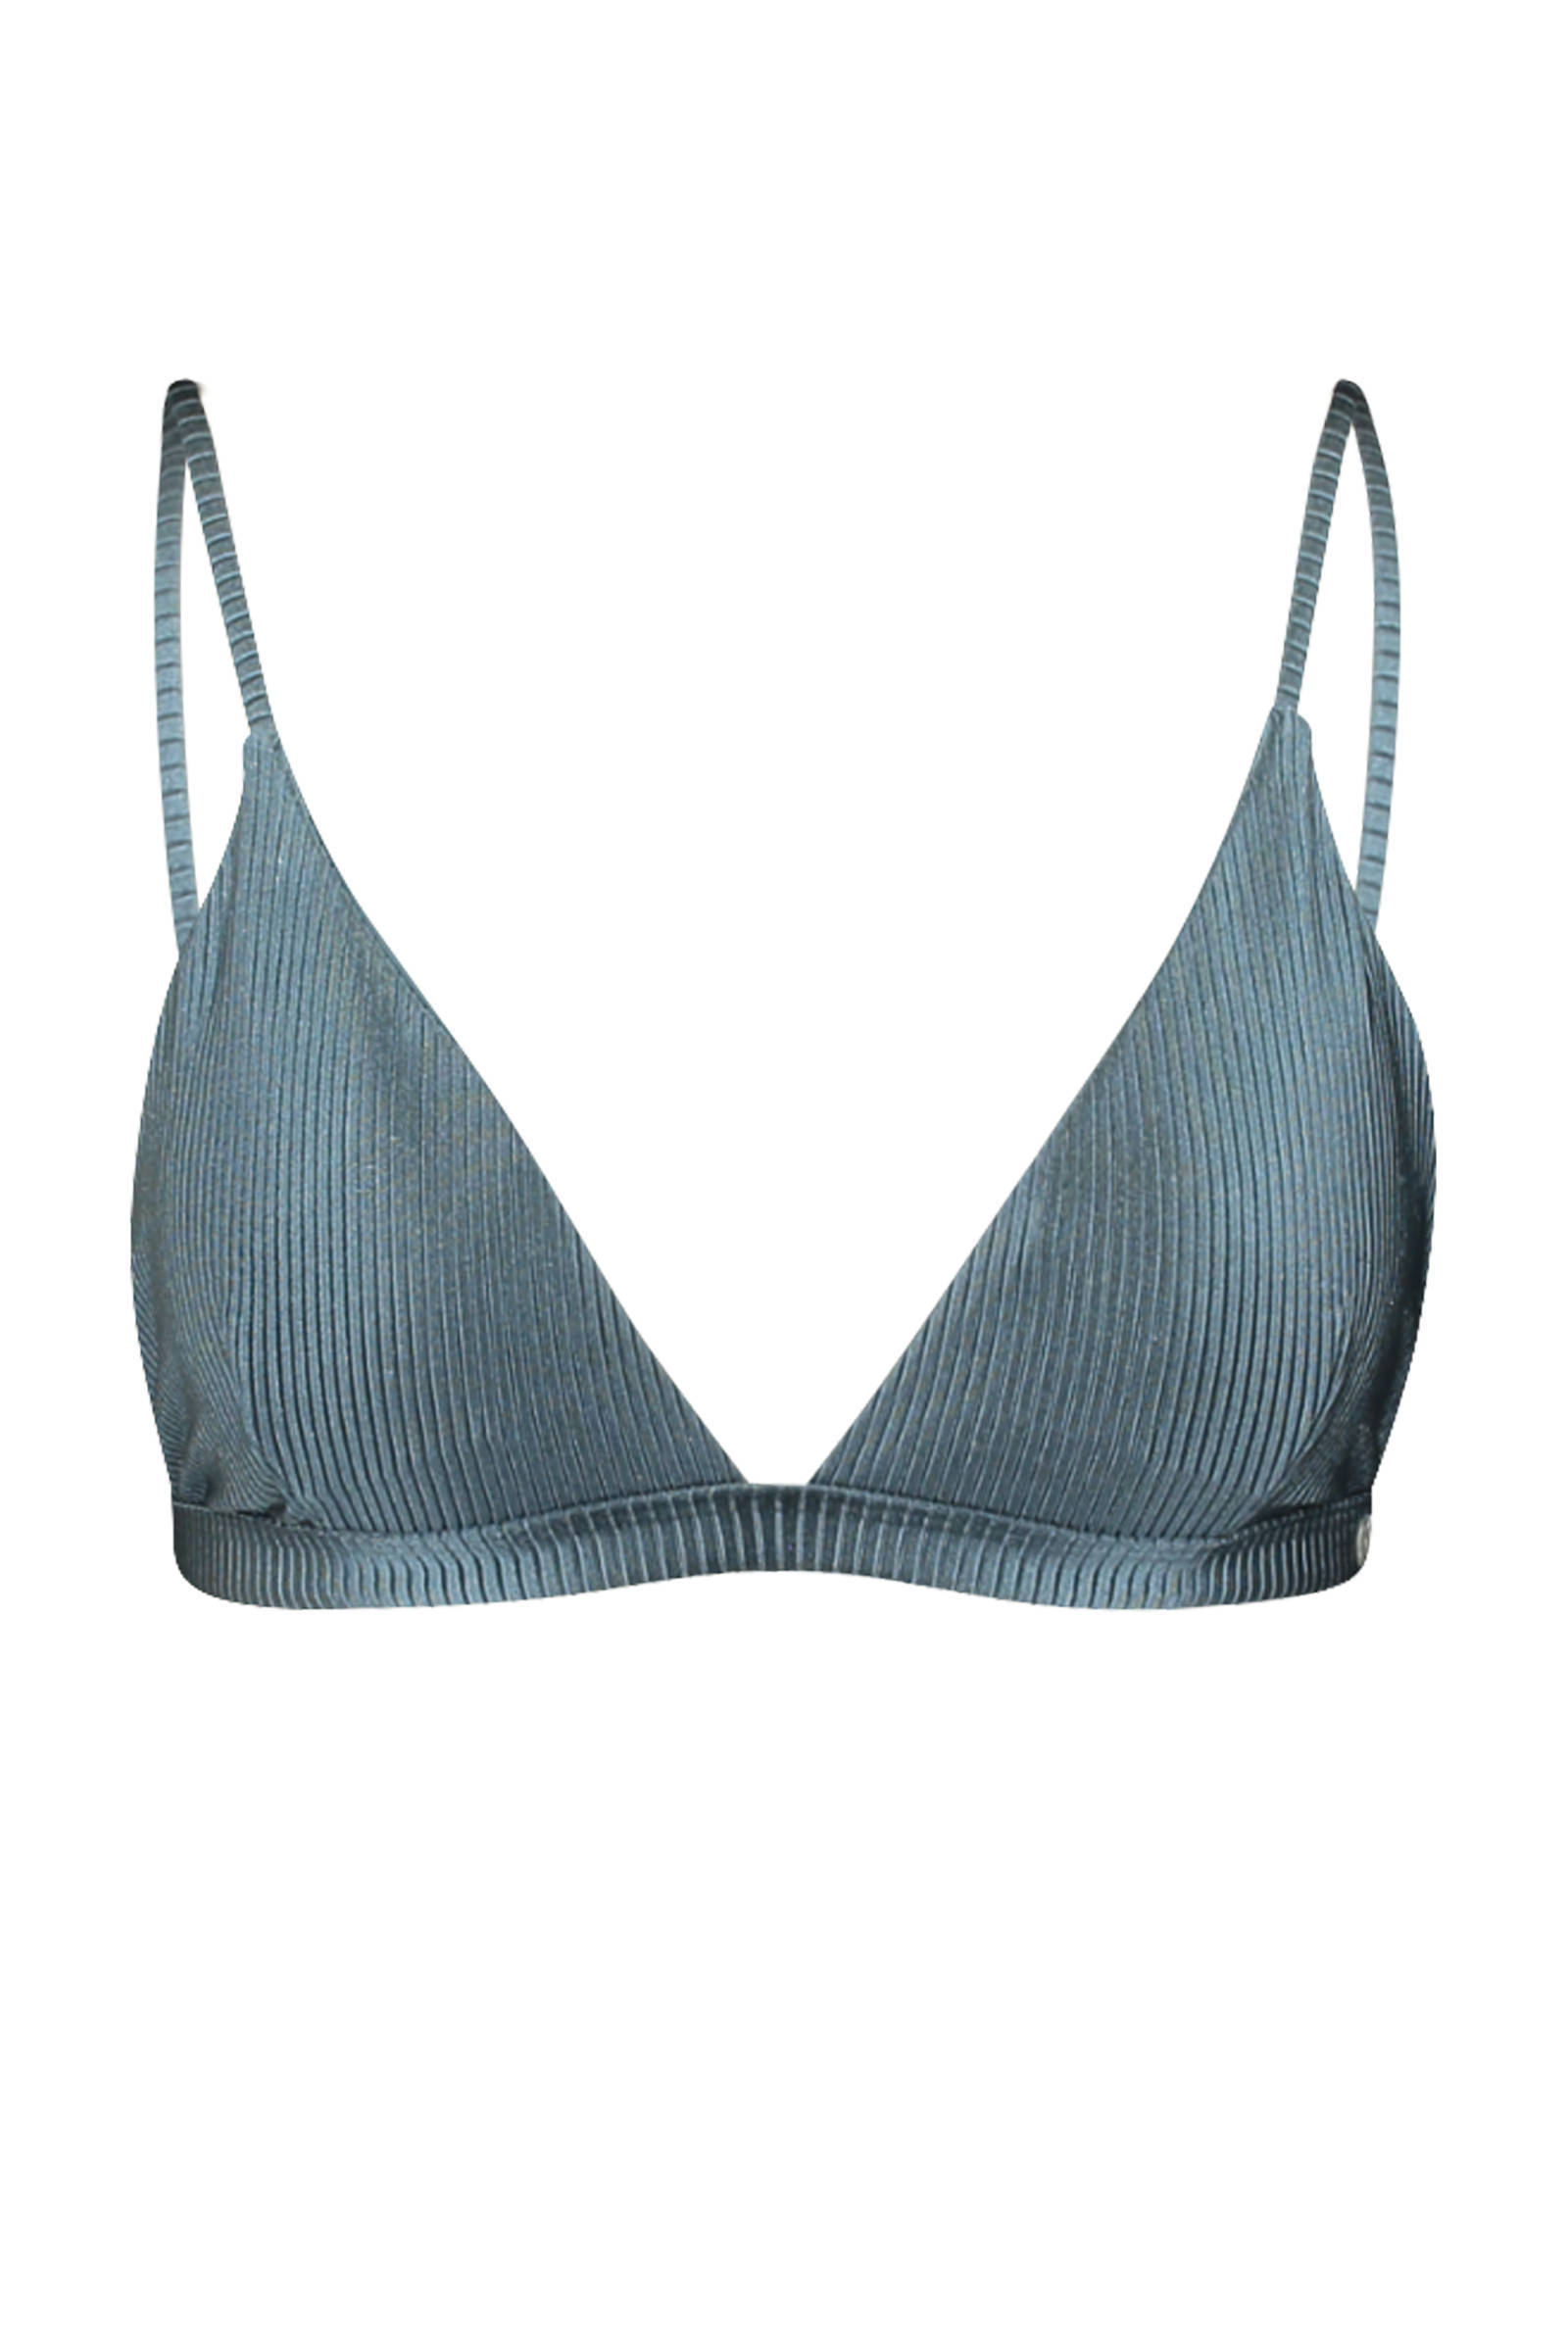 America Today bikinitop Audrey met rib structuur blauw online kopen